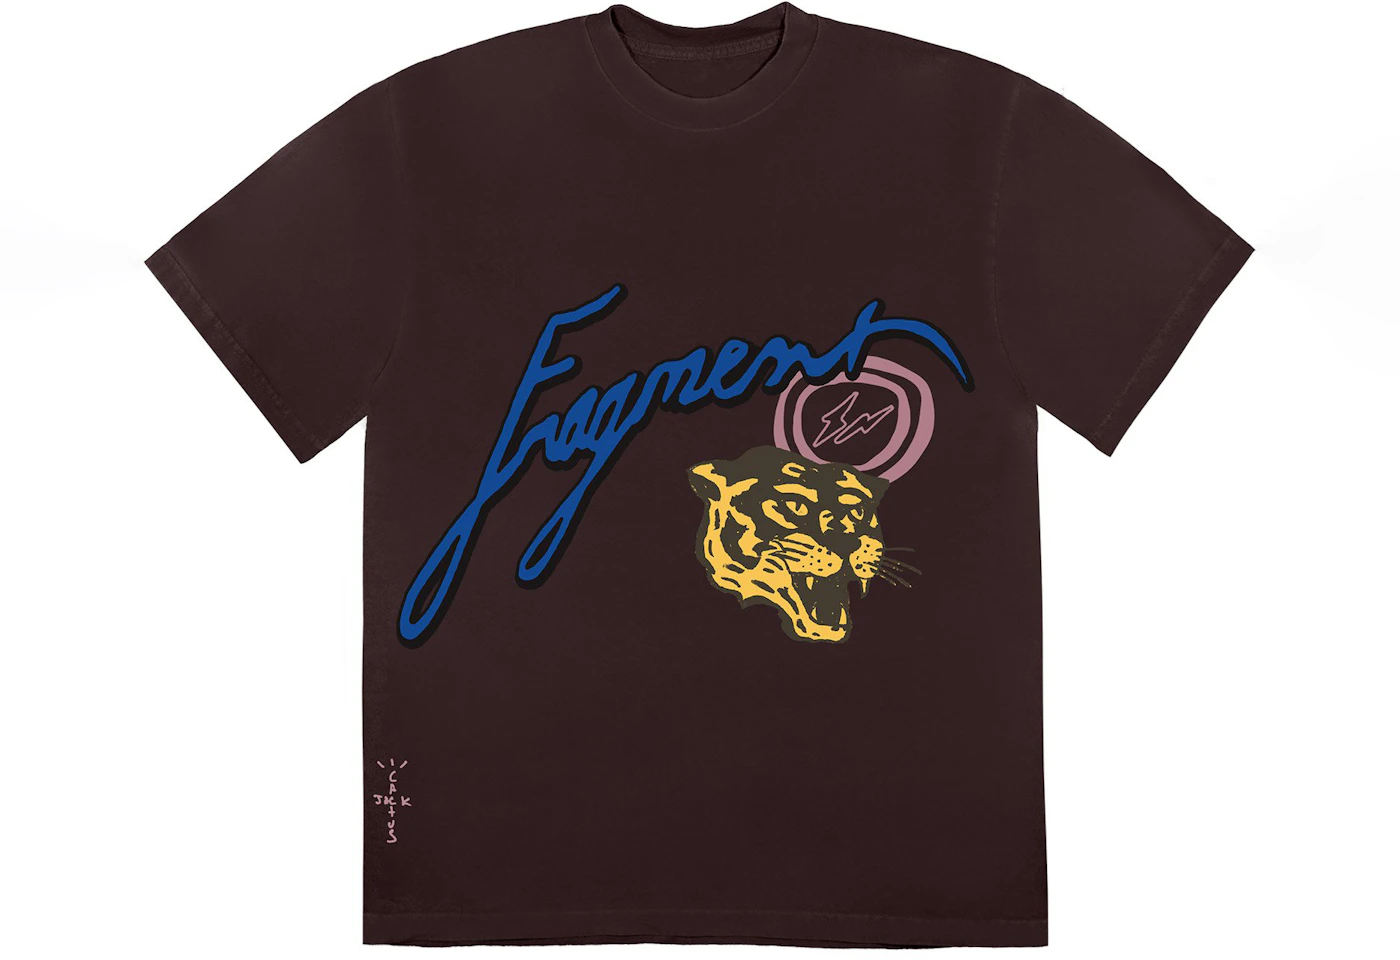 Travis Scott x Jordan x Fragment T-shirt - Travis Scott Merch